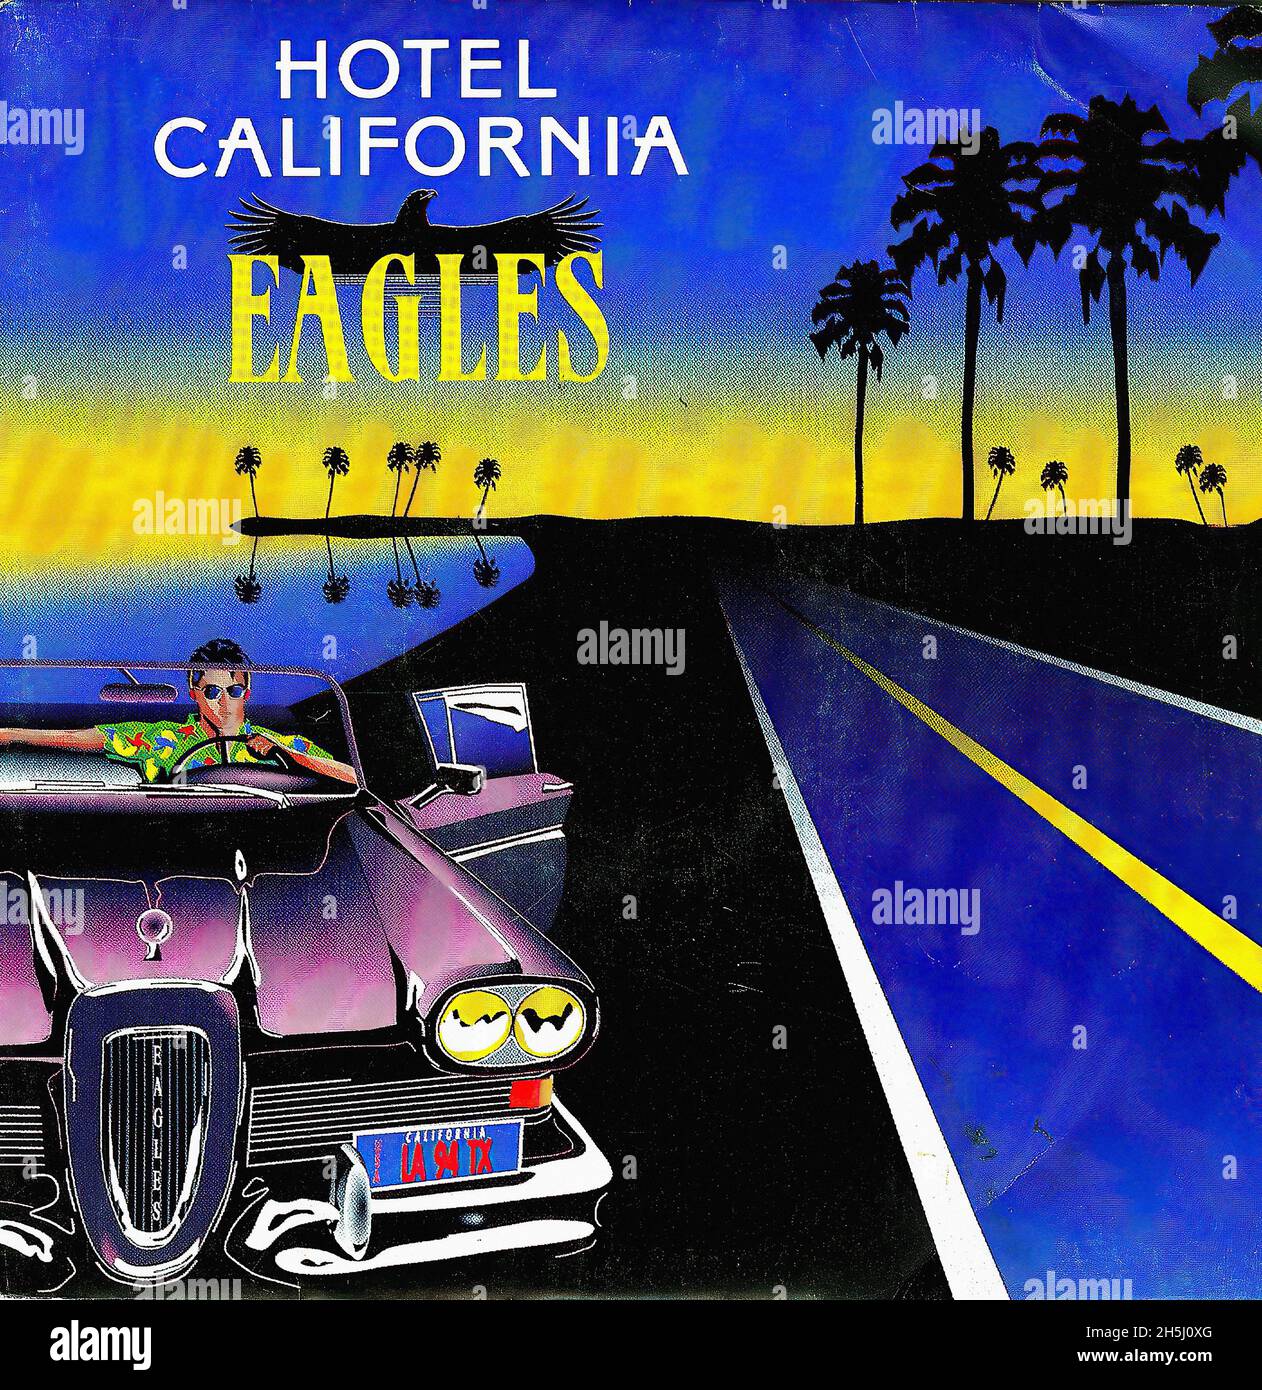 Couverture de disque unique vintage - Eagles - Hotel California - F - 1976  01 Photo Stock - Alamy